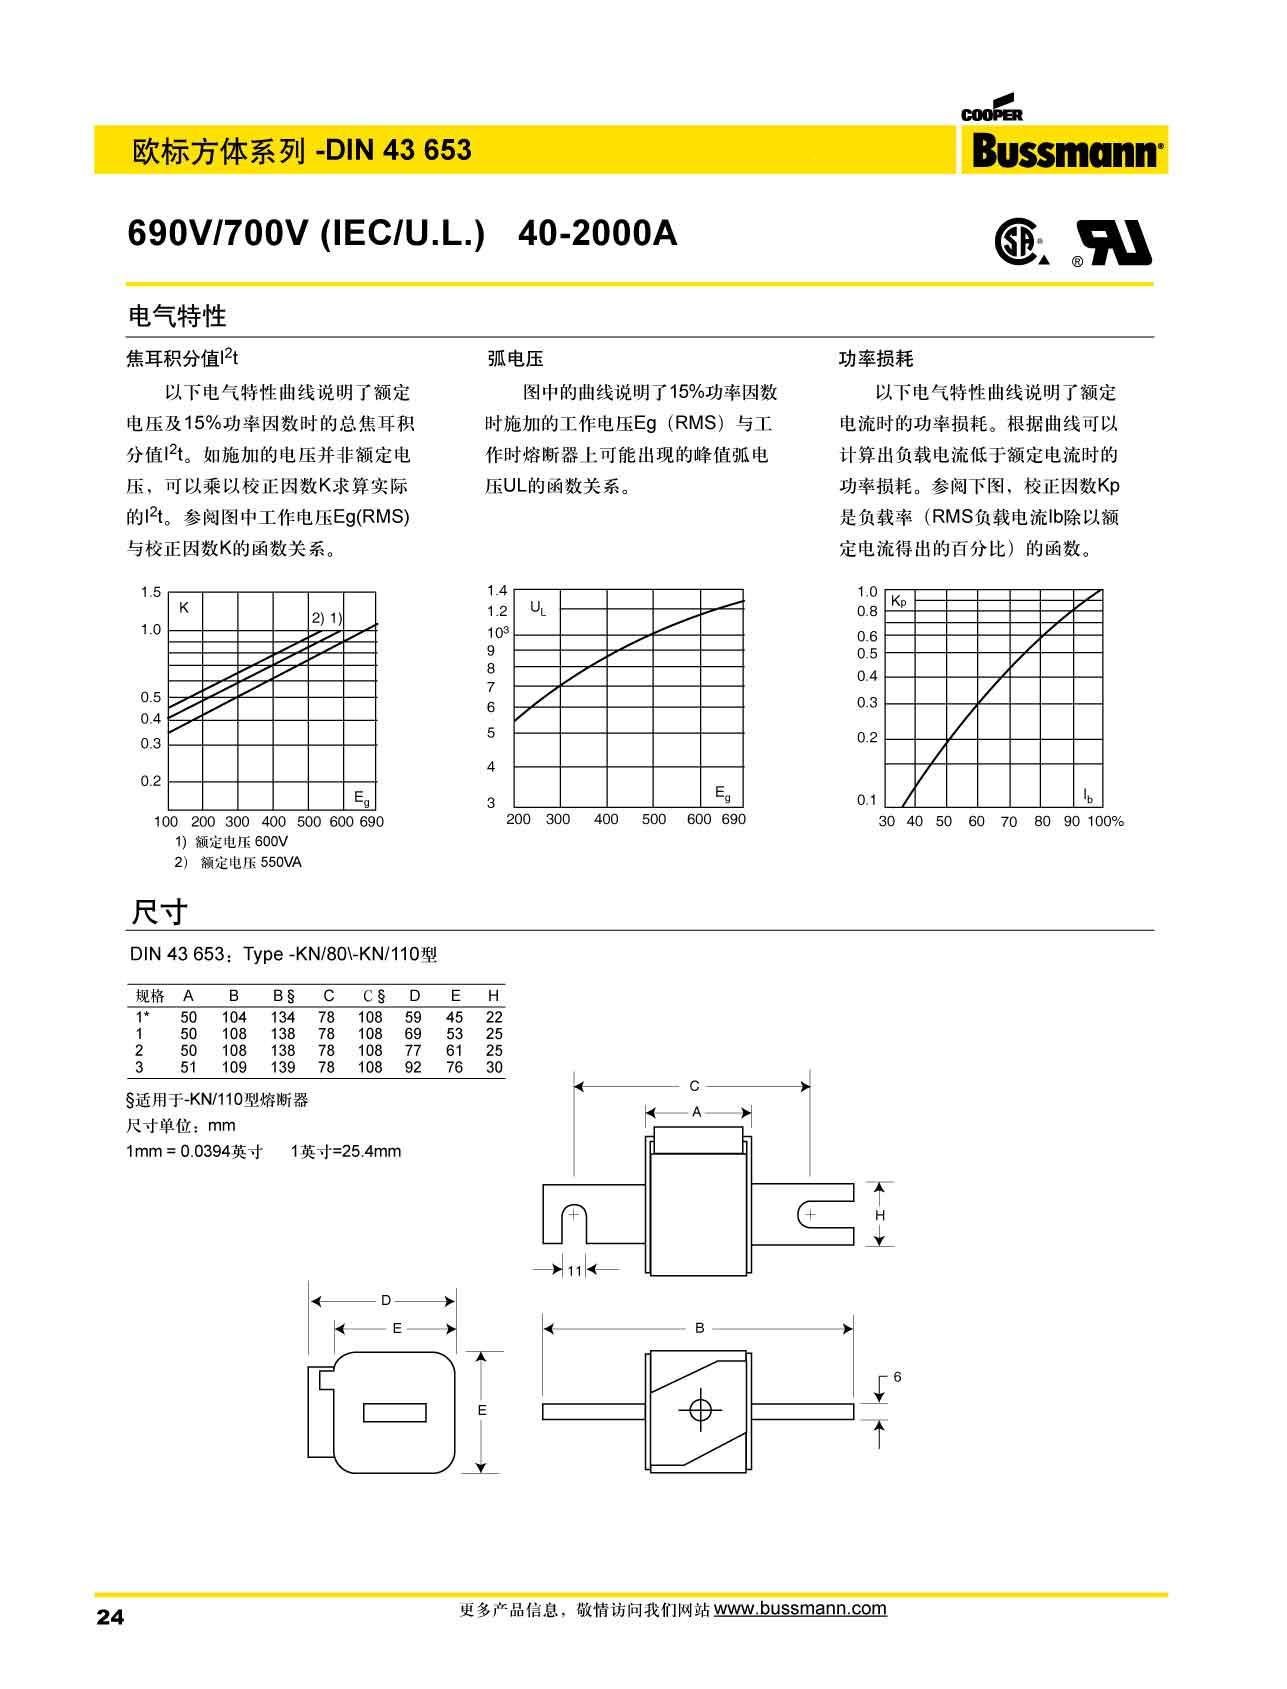 欧标方体DIN43653 690V熔断器 电气特性 产品尺寸图